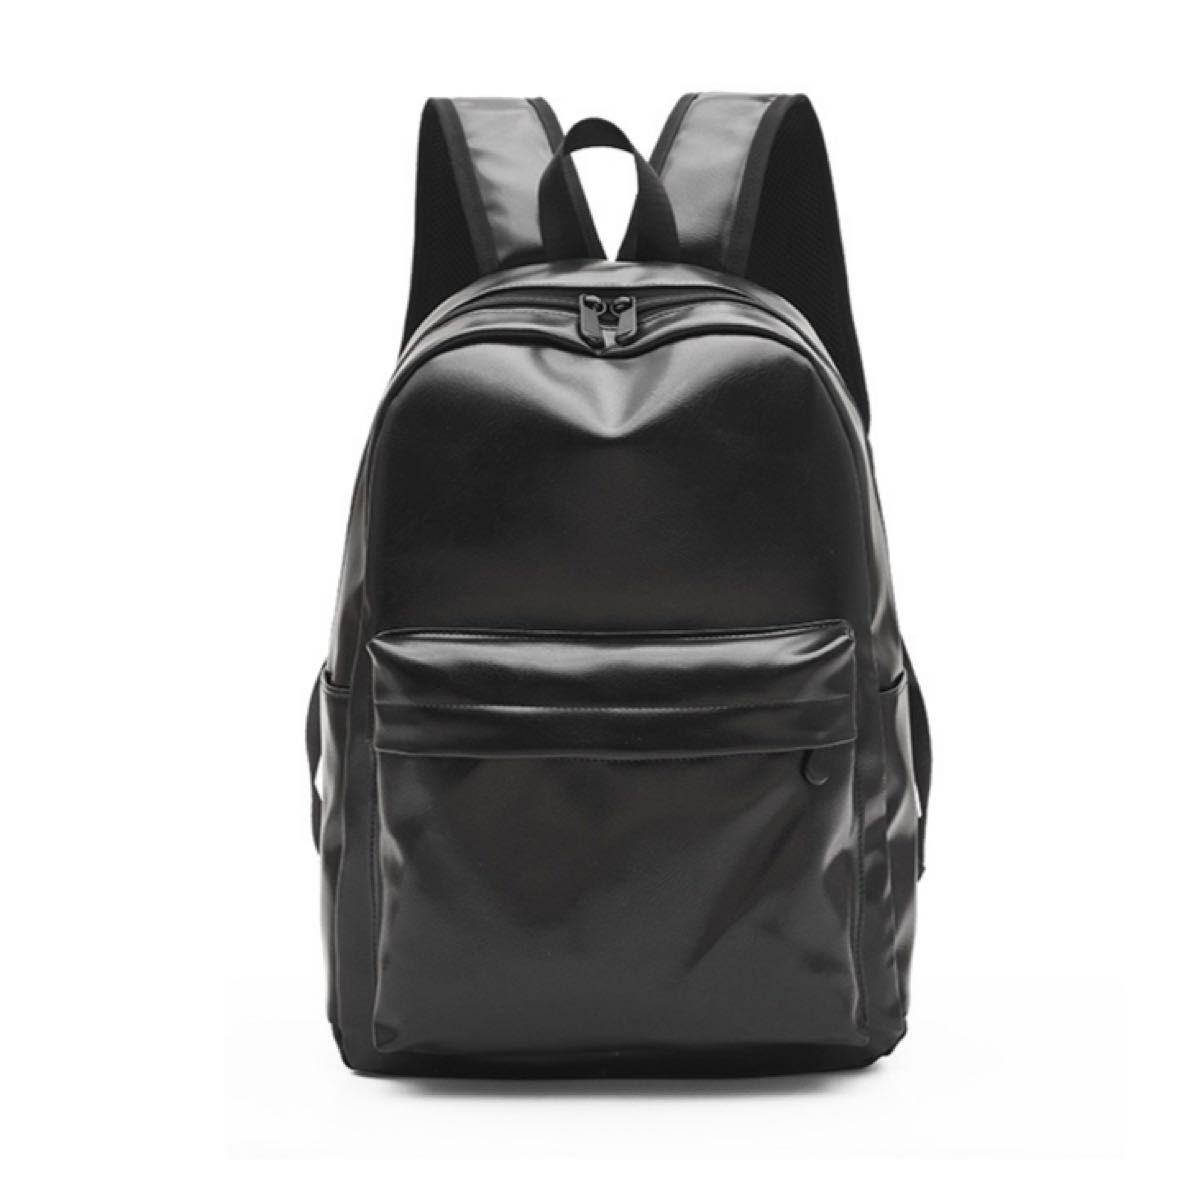 ユニセックス レザーリュック ブラック【382】 大容量 バックパック メンズバッグ レディースバッグ